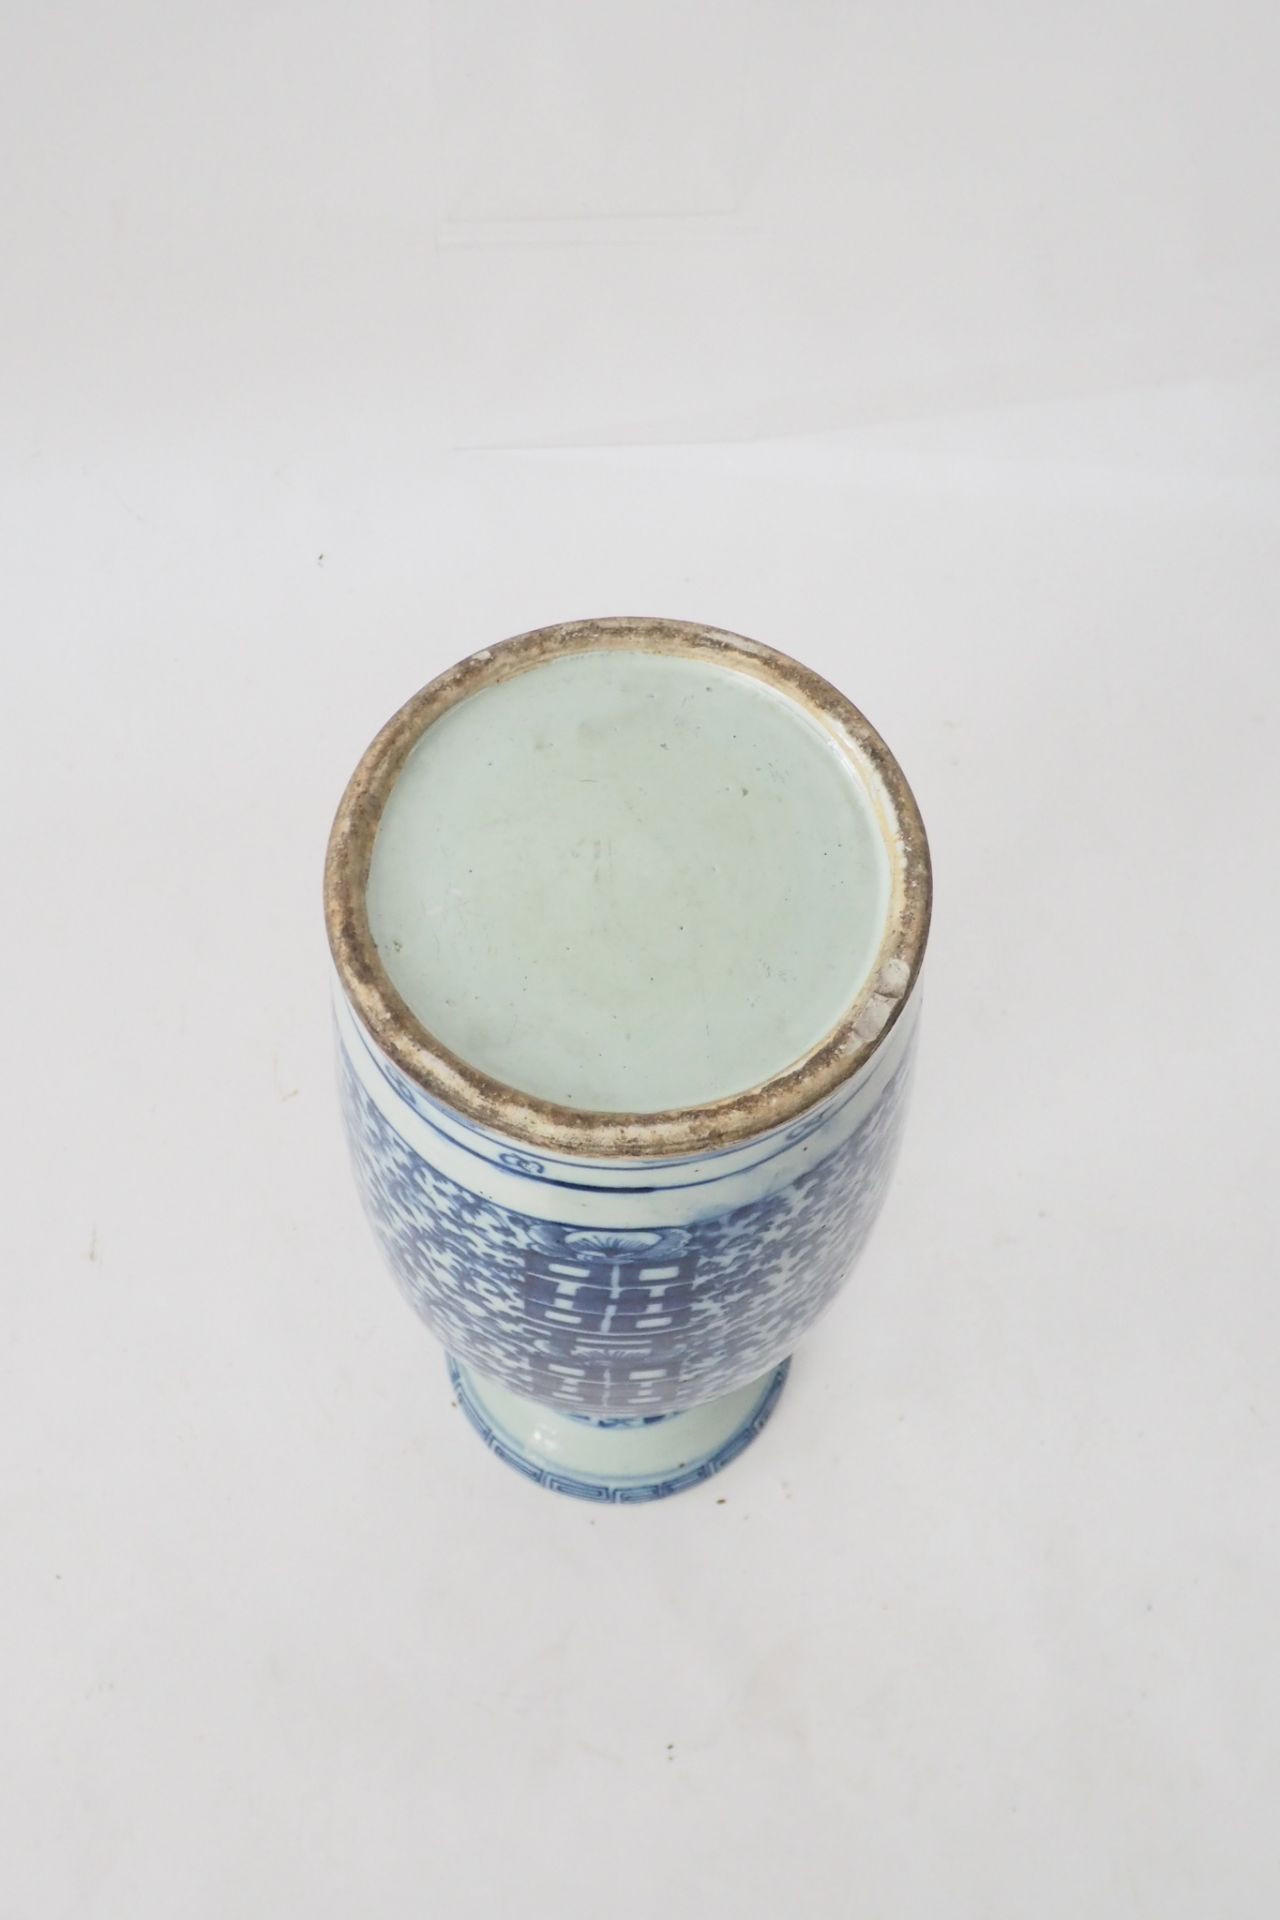 Blau-weiße China Porzellan Bodenvase - Bild 6 aus 7